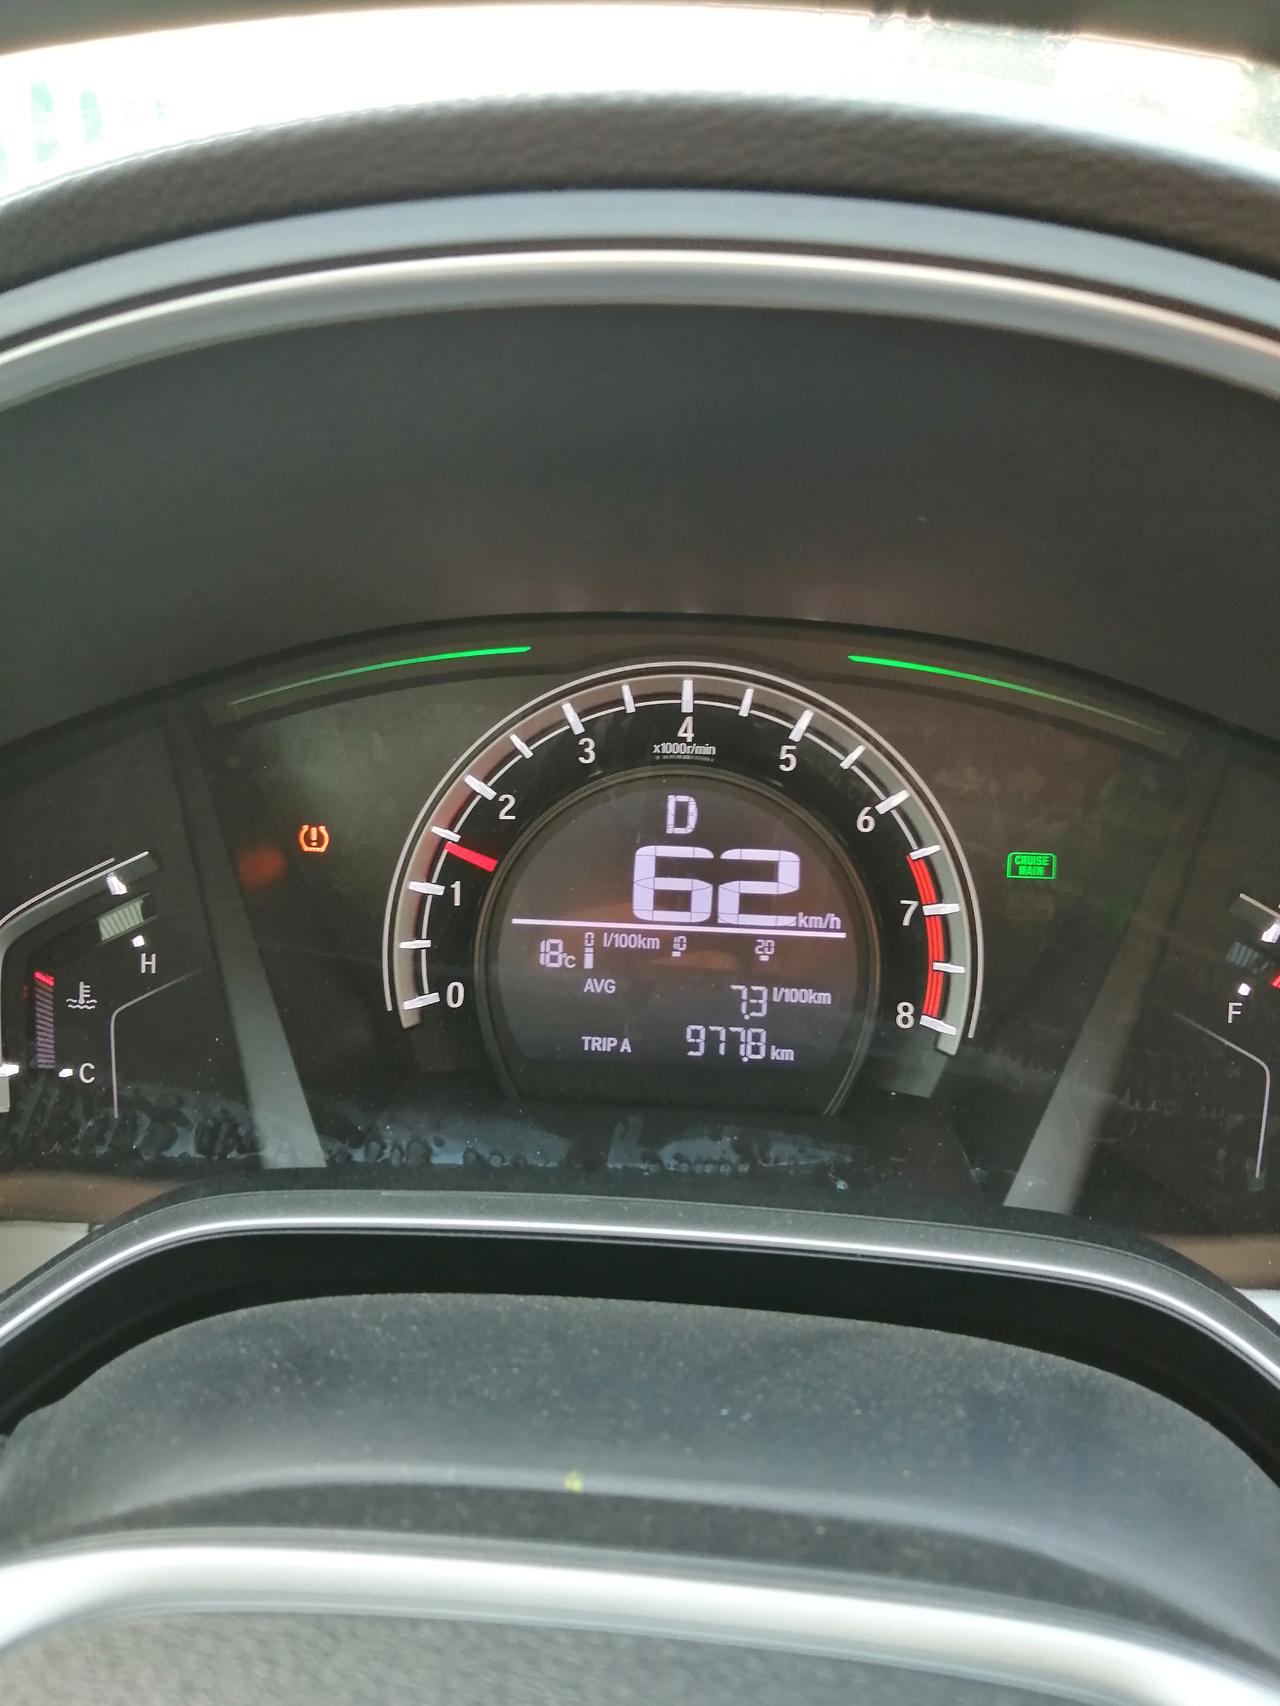 本田CR-V 提车后走了800公里，今天第一次跑高速，行车中仪表盘突然显示胎压警示图标，急忙停车检查各轮胎未见异常，只有